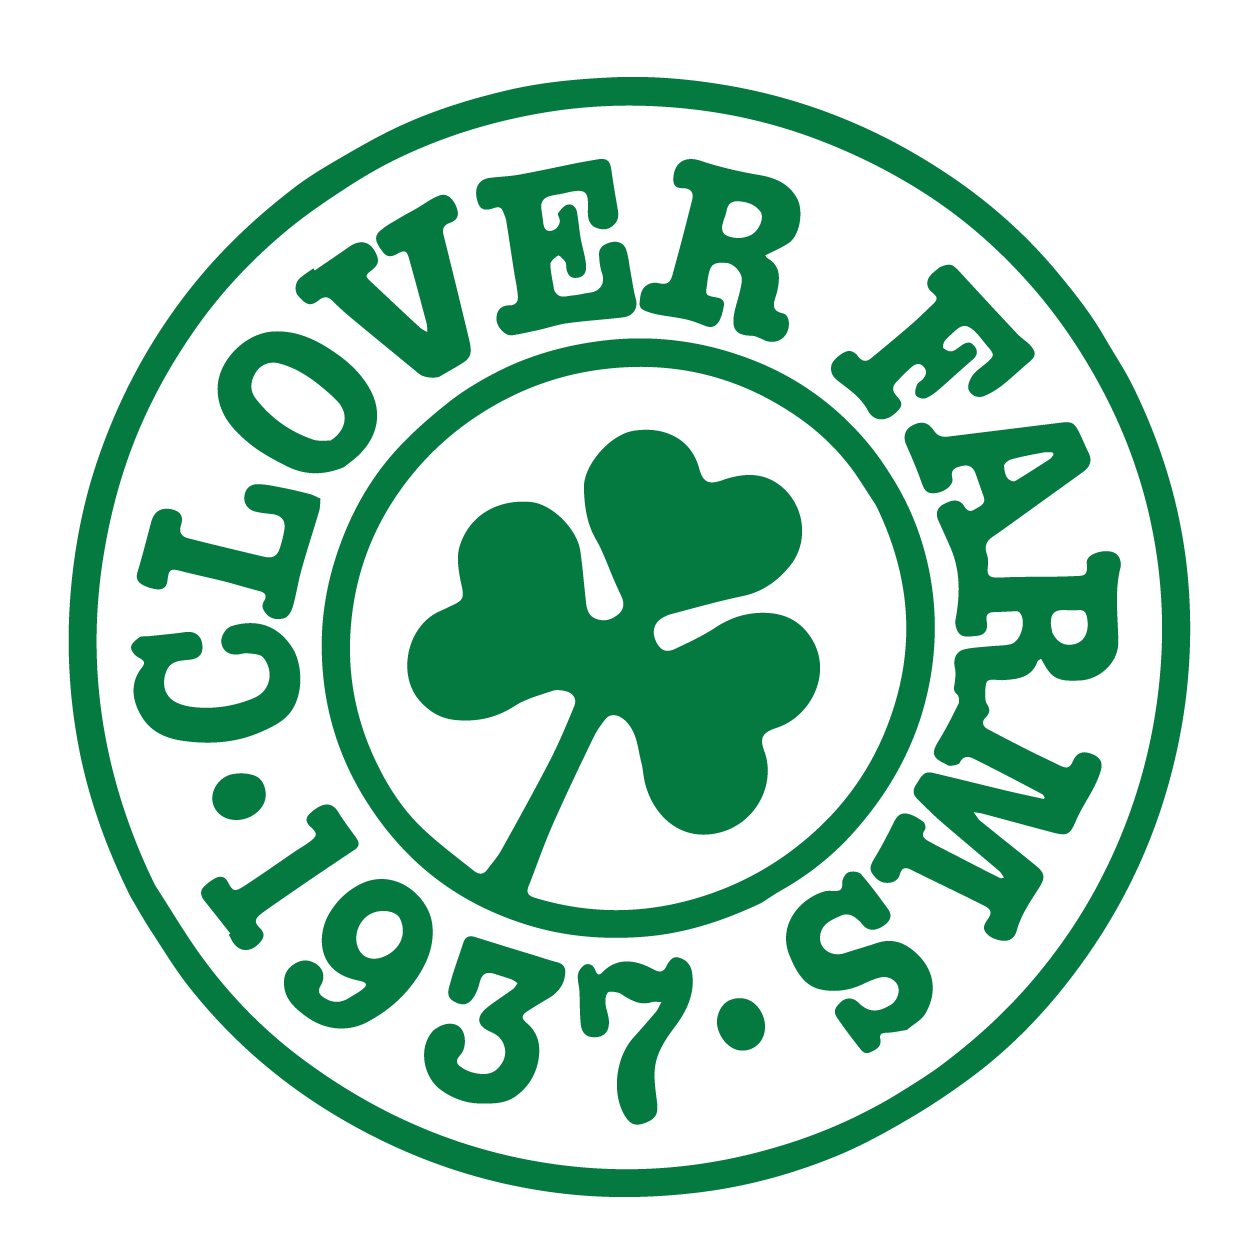 Business logo of Clover Farms Dairy